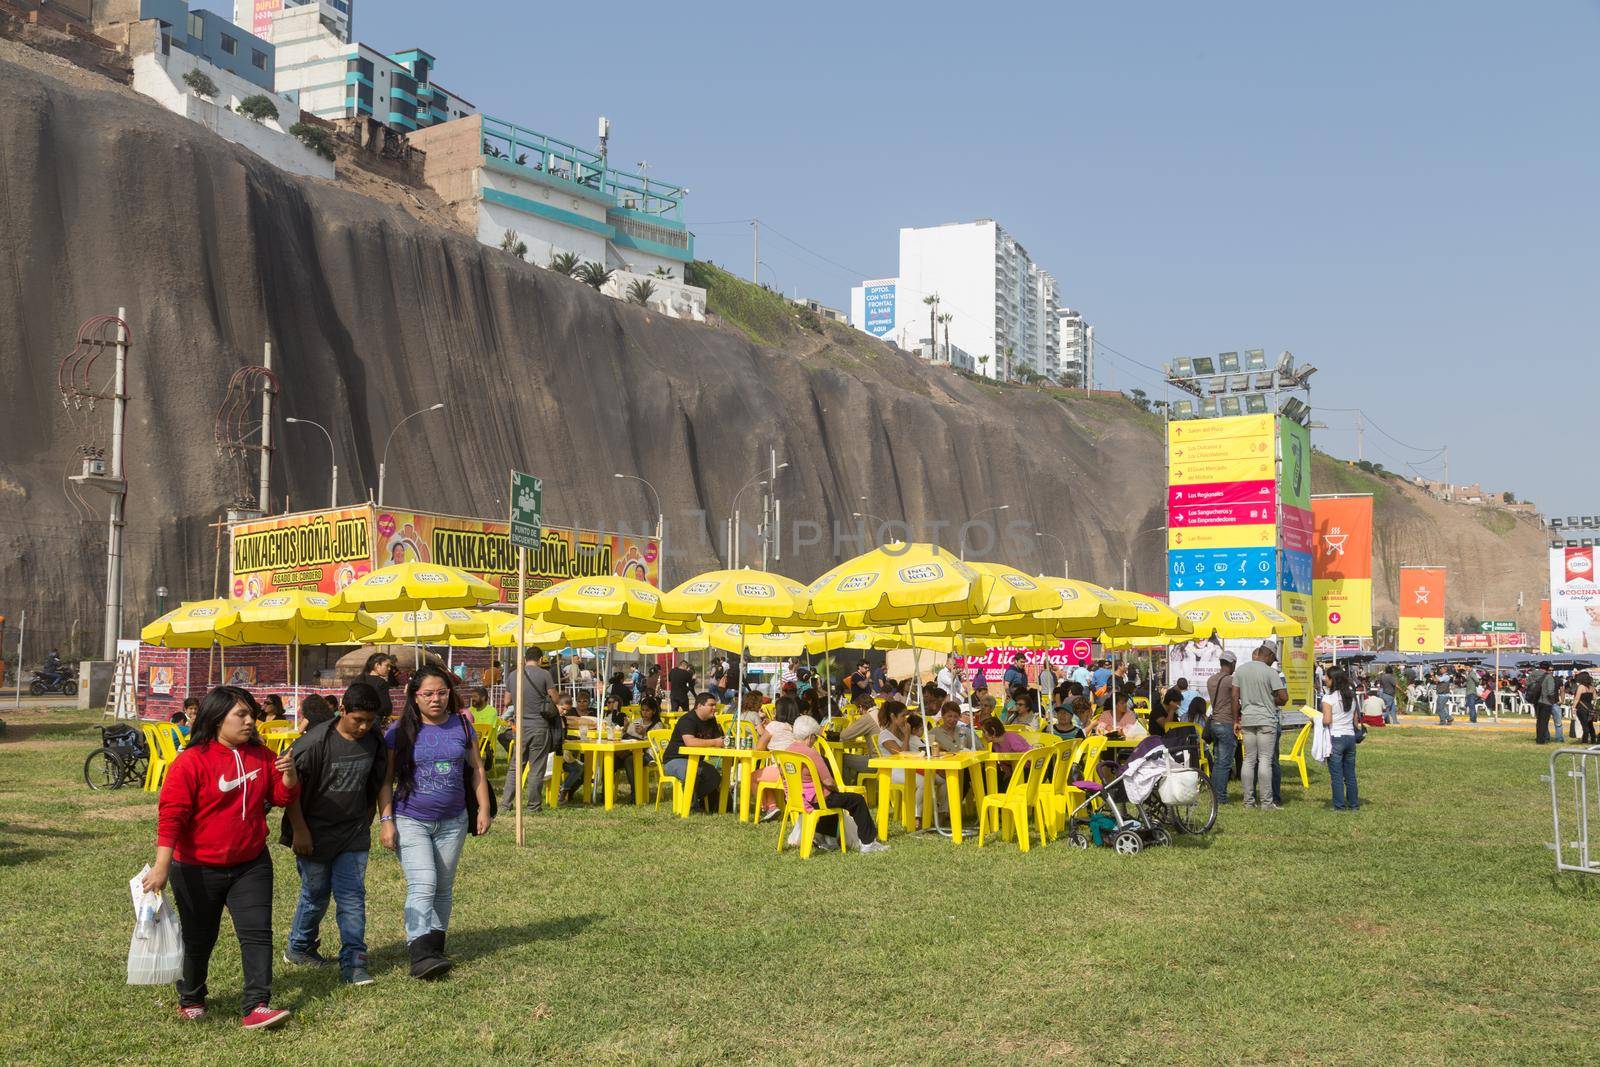 Mistura Food Festival 2015 in Lima, Peru by oliverfoerstner